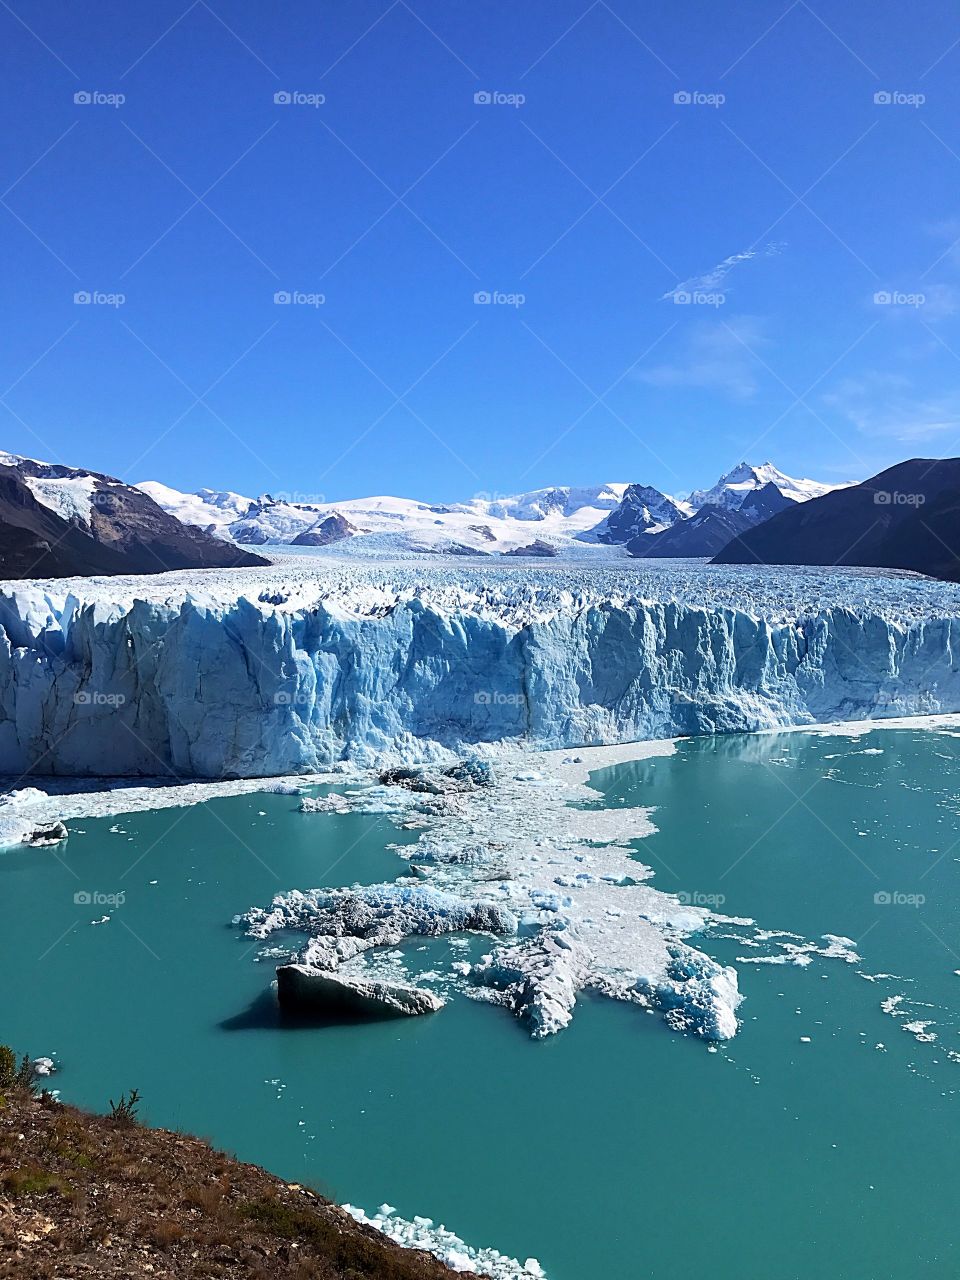 Perito Moreno, Argentina 